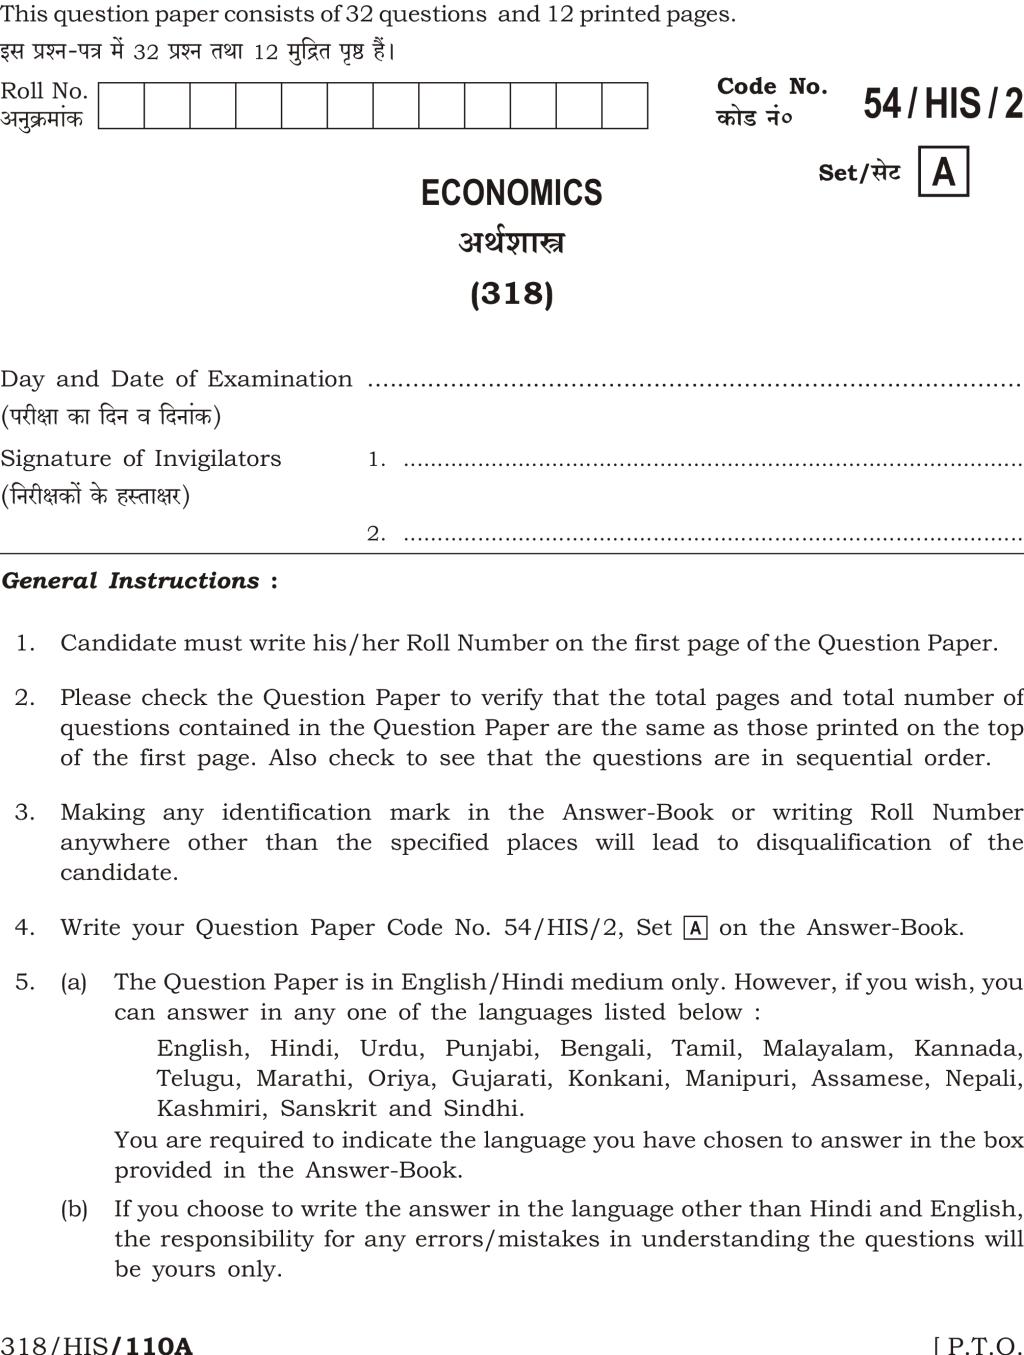 NIOS Class 12 Question Paper Apr 2017 - Economics - Page 1